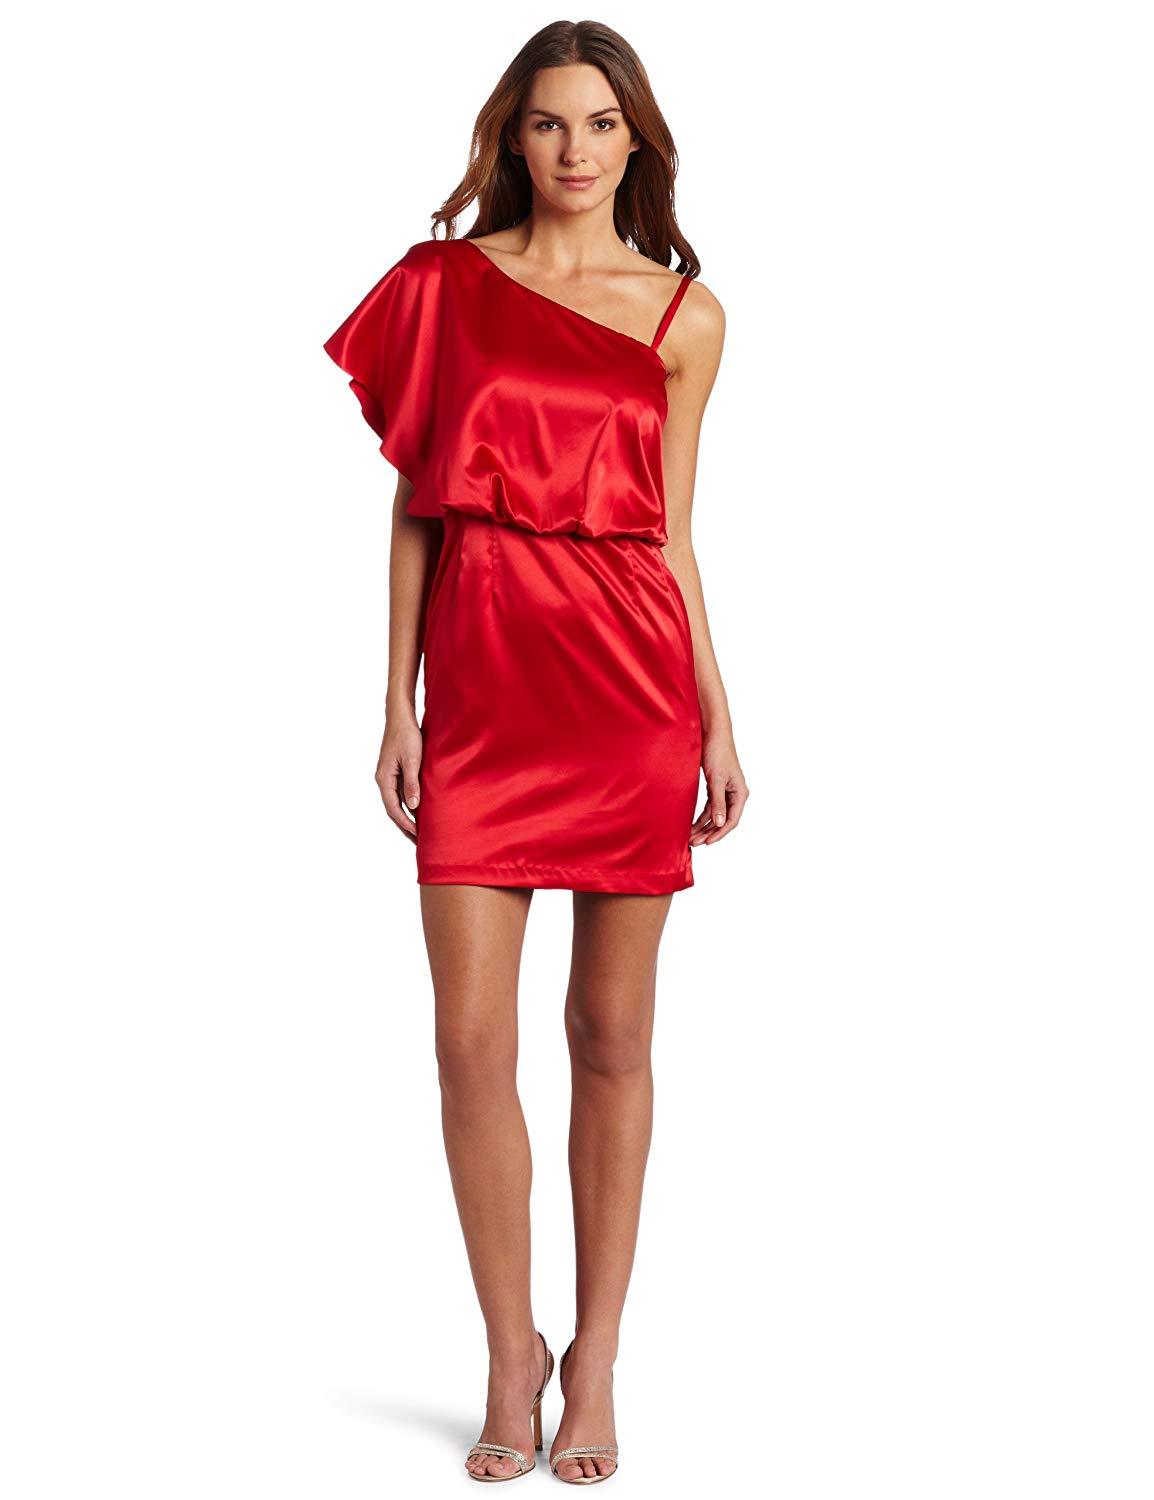 Jessica Simpson - JS1R3164 One Shoulder Flutter Sleeve Cocktail Dress In Red